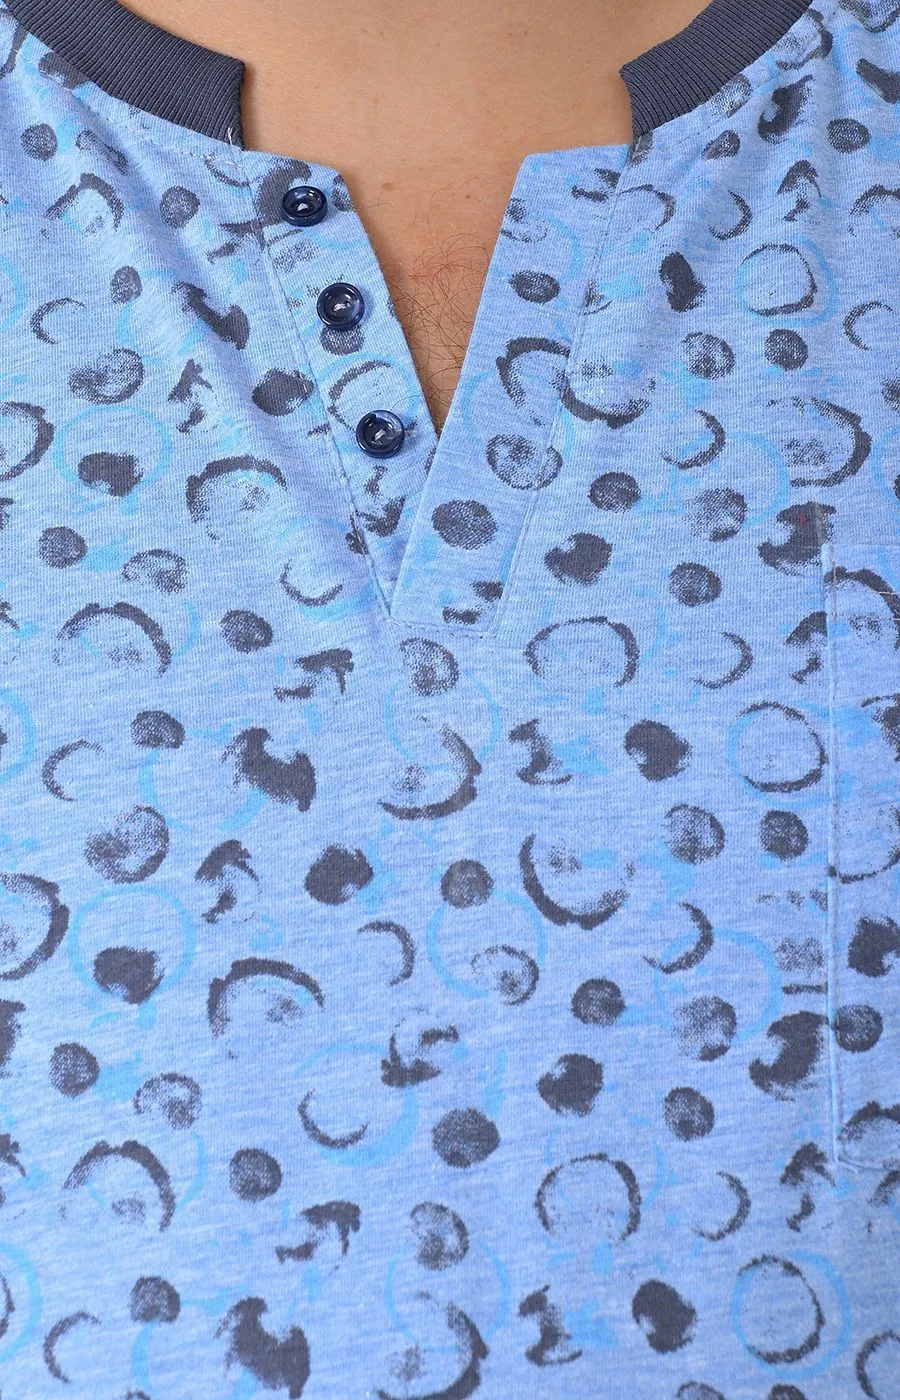 Регбийка голубая с серыми кружочками большого размера